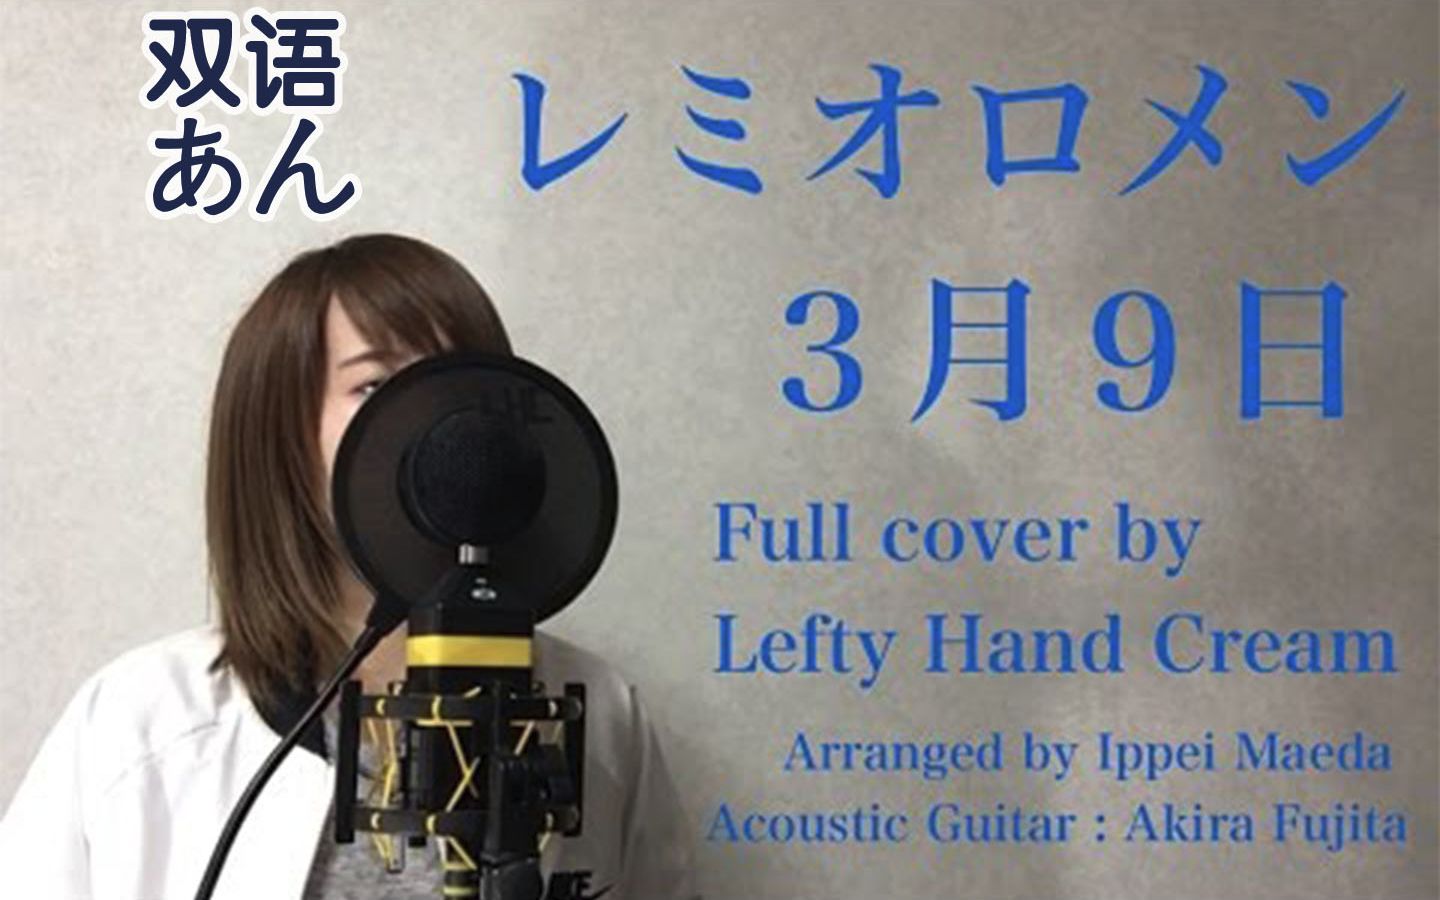 【双语字幕】lefty hand cream -『3月9日』